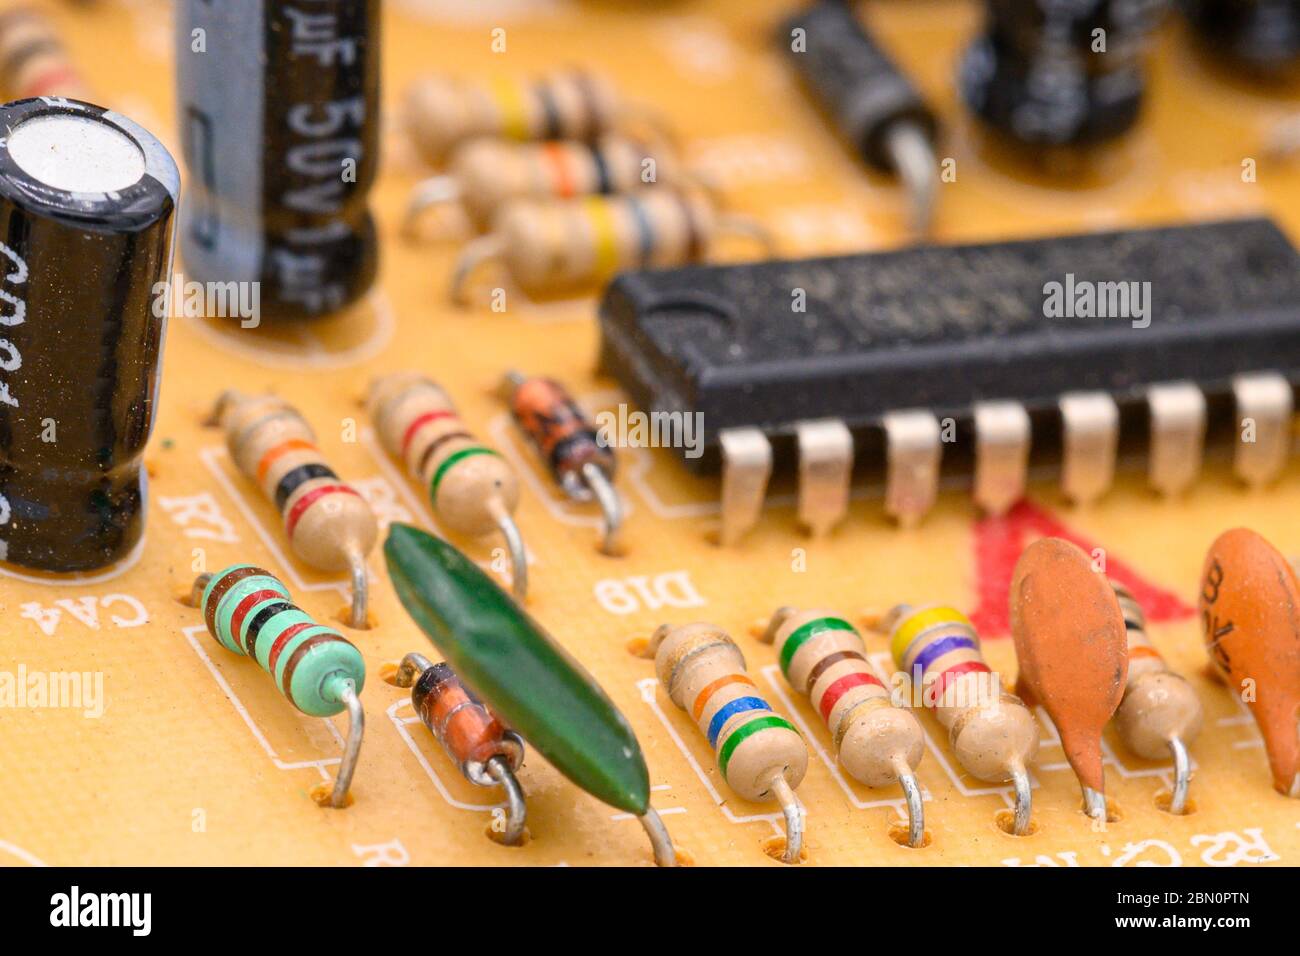 Alte alte alte alte Leiterplatte mit elektronischen Komponenten. Nahaufnahme mit flachem Freiheitsgrad . Stockfoto